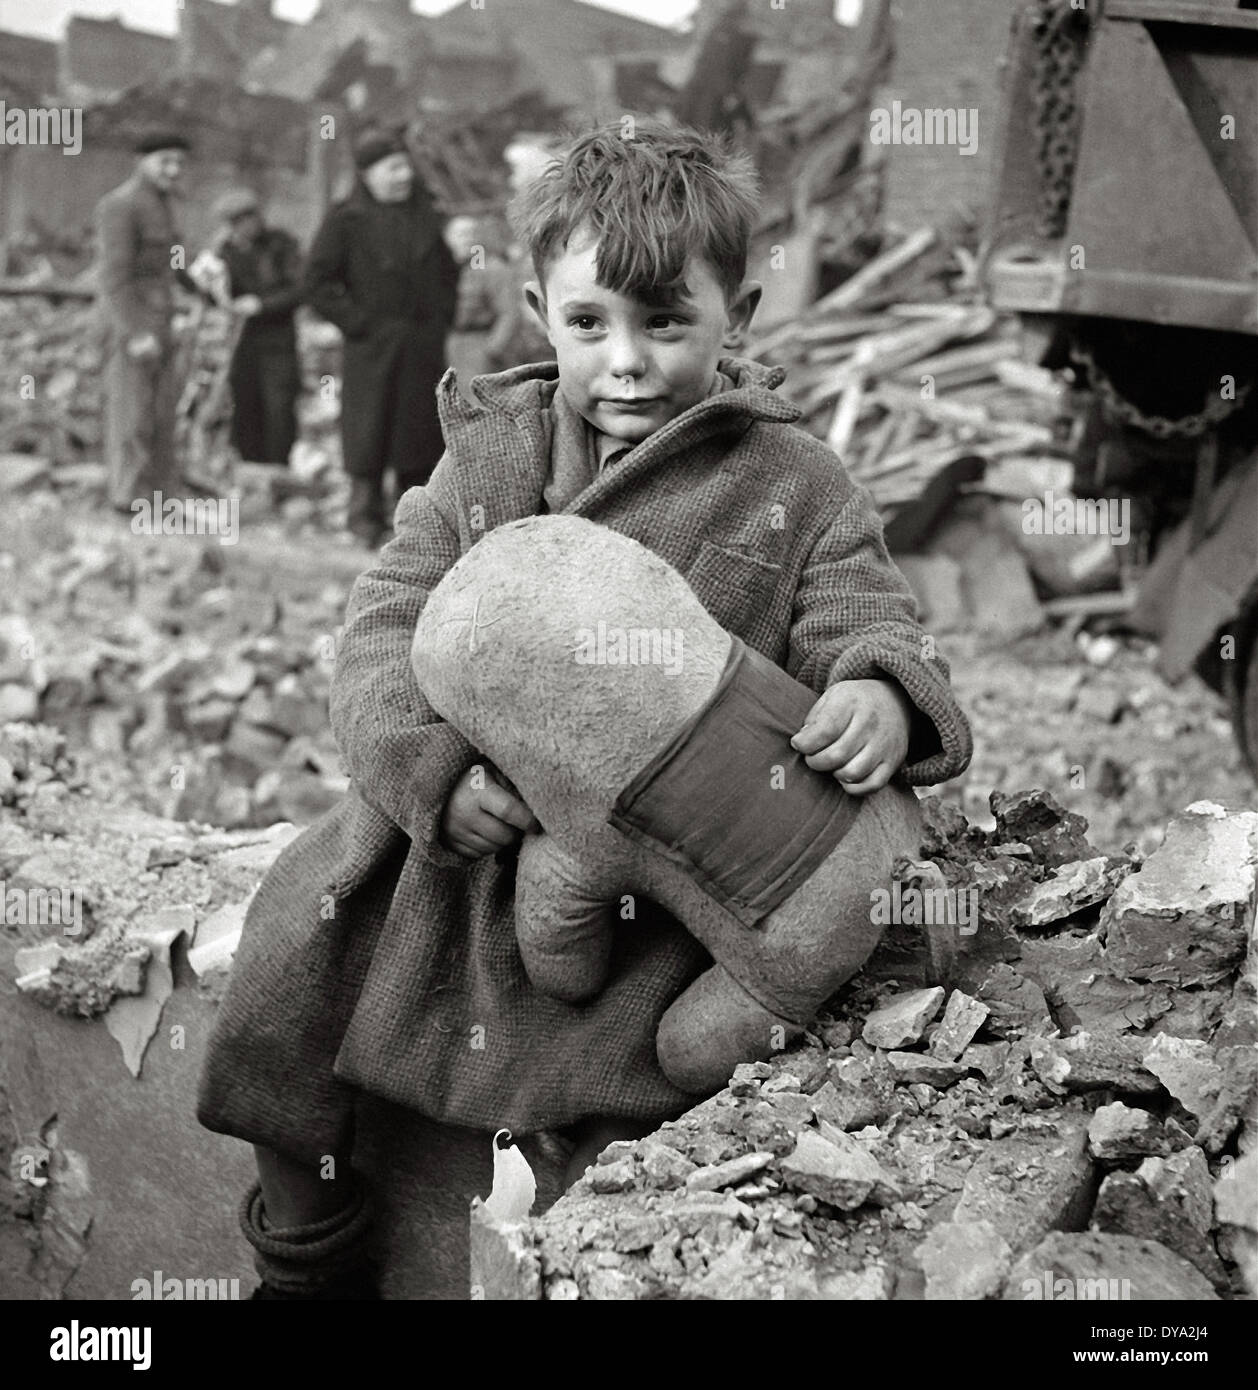 Historique de la Deuxième Guerre mondiale Seconde Guerre mondiale Guerre mondiale Seconde Guerre mondiale l'Angleterre soft toy boy ruines civil national des raids aériens nazis socialiste de Londres, Banque D'Images